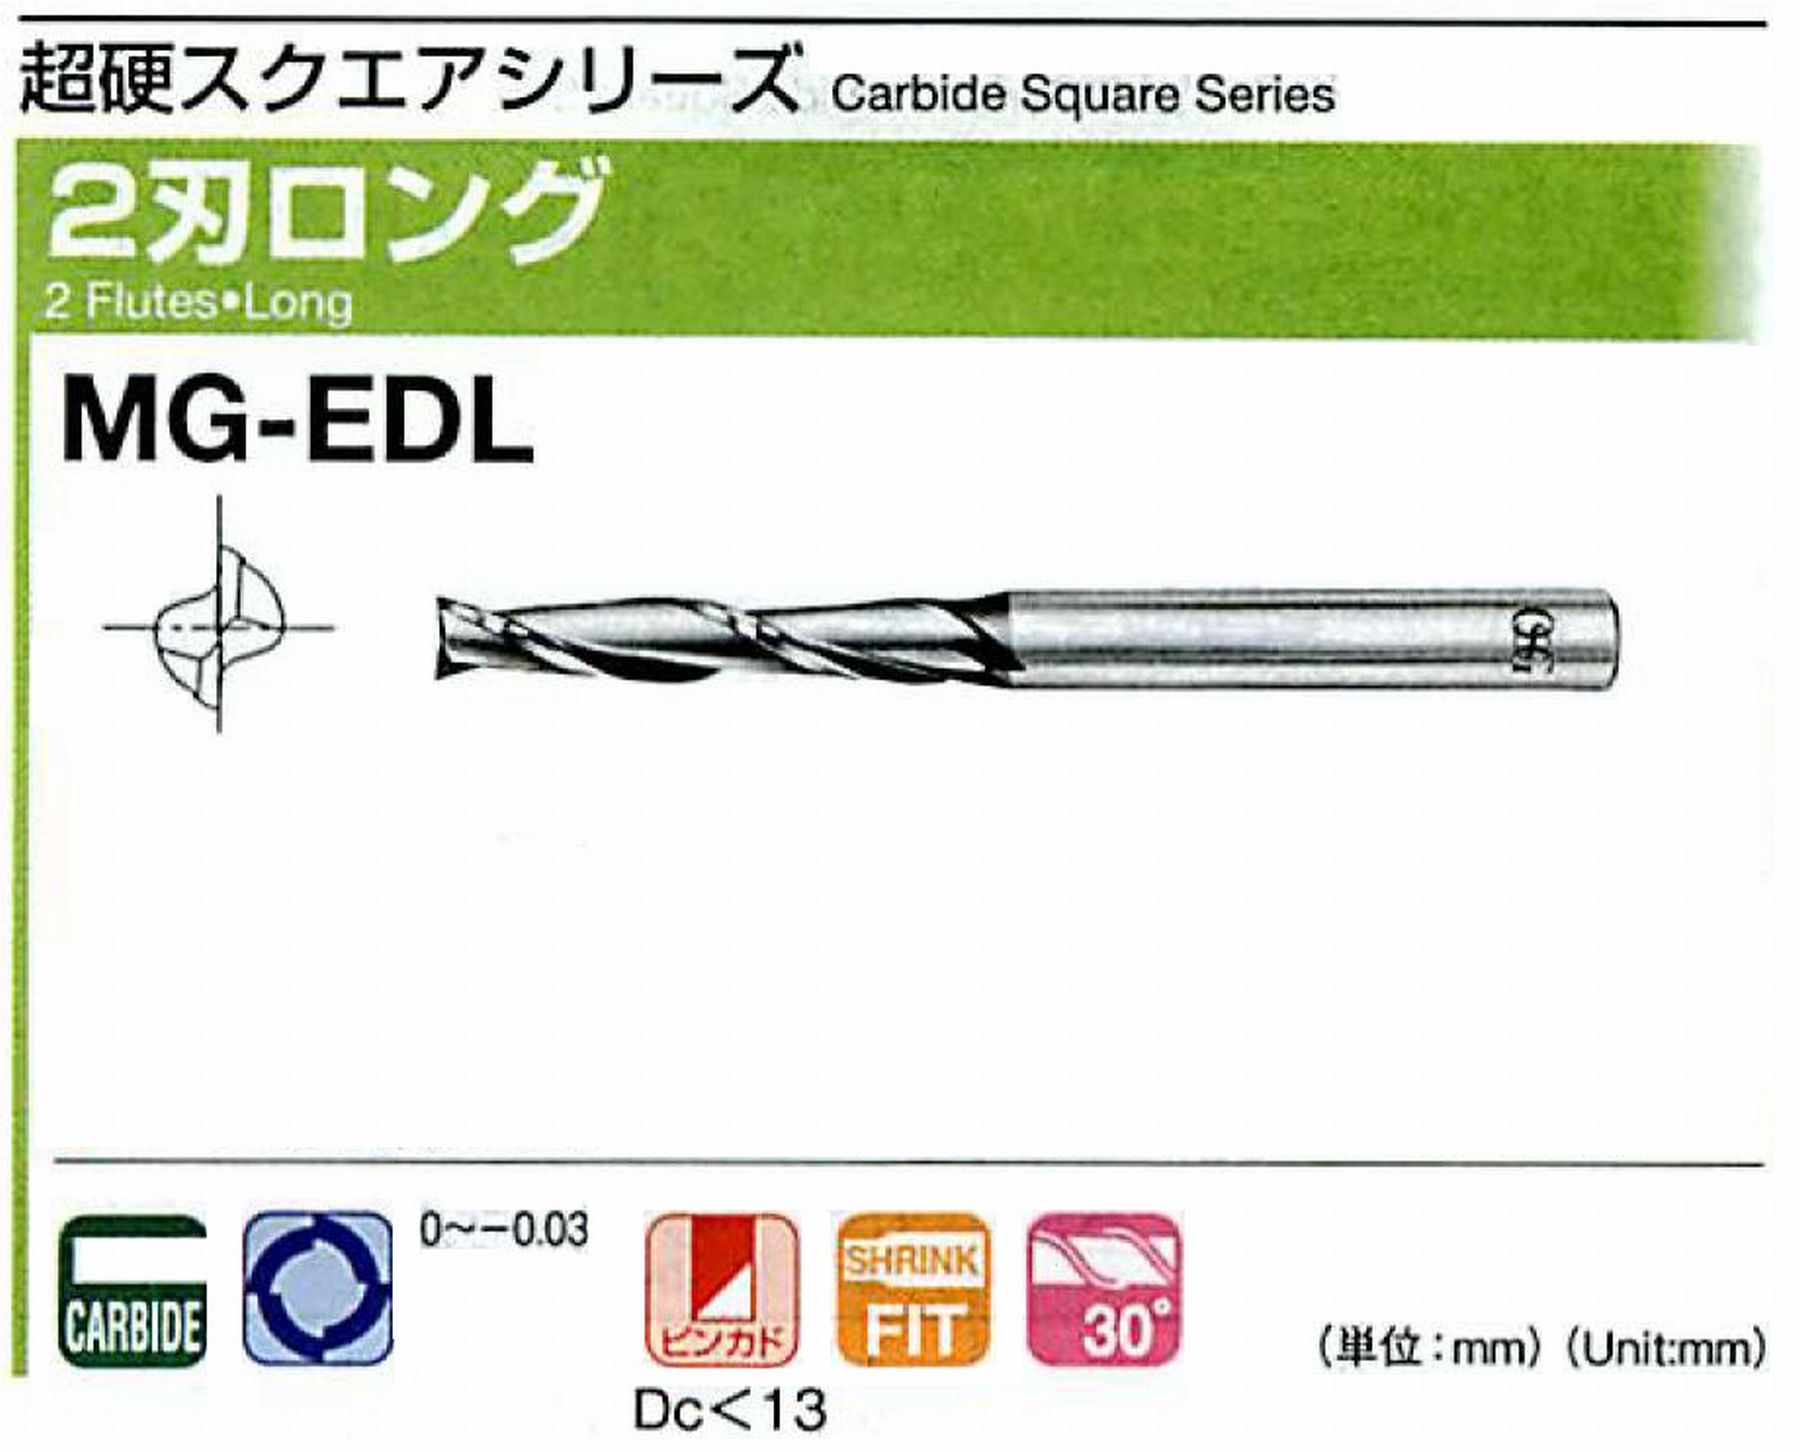 オーエスジー/OSG 2刃ロング MG-EDL 外径18 全長115 刃長48 シャンク径16mm